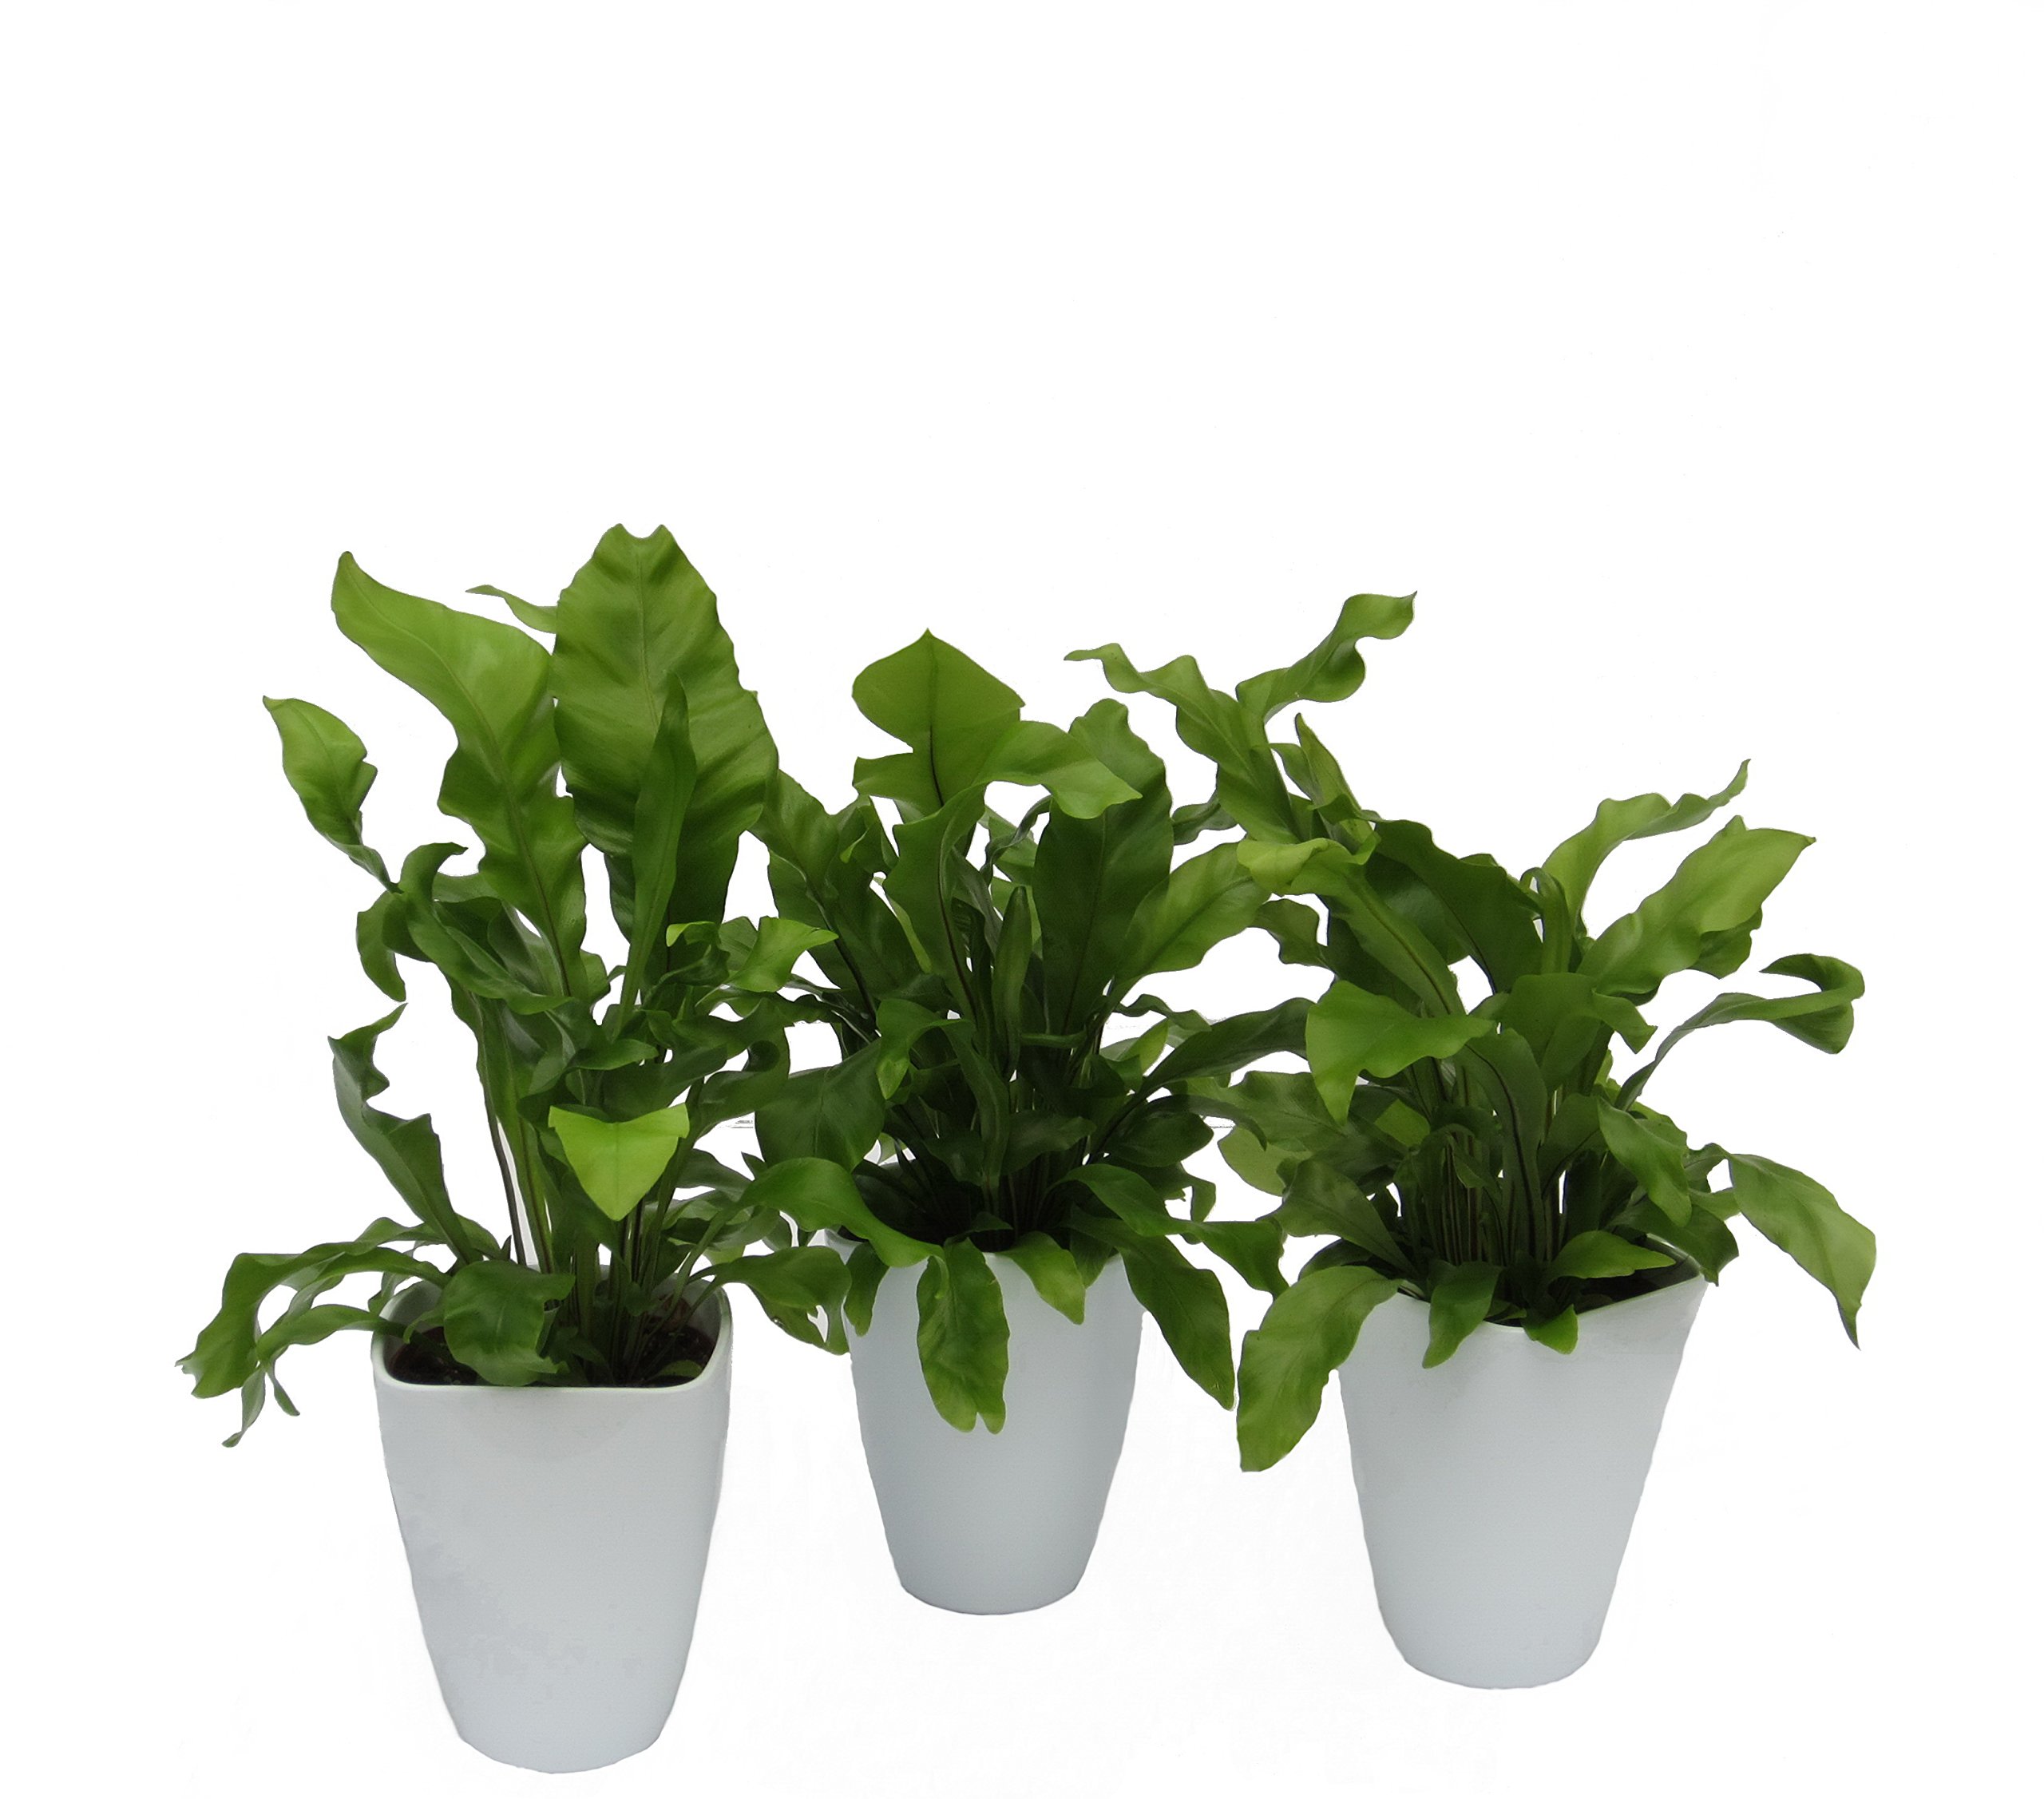 Dominik Blumen und Pflanzen, Zimmerpflanzen Nestfarn "Asplenium nidus", 3 Pflanzen, circa 15 cm hoch, 13 cm Topf und Dekotopf, weiß / grün